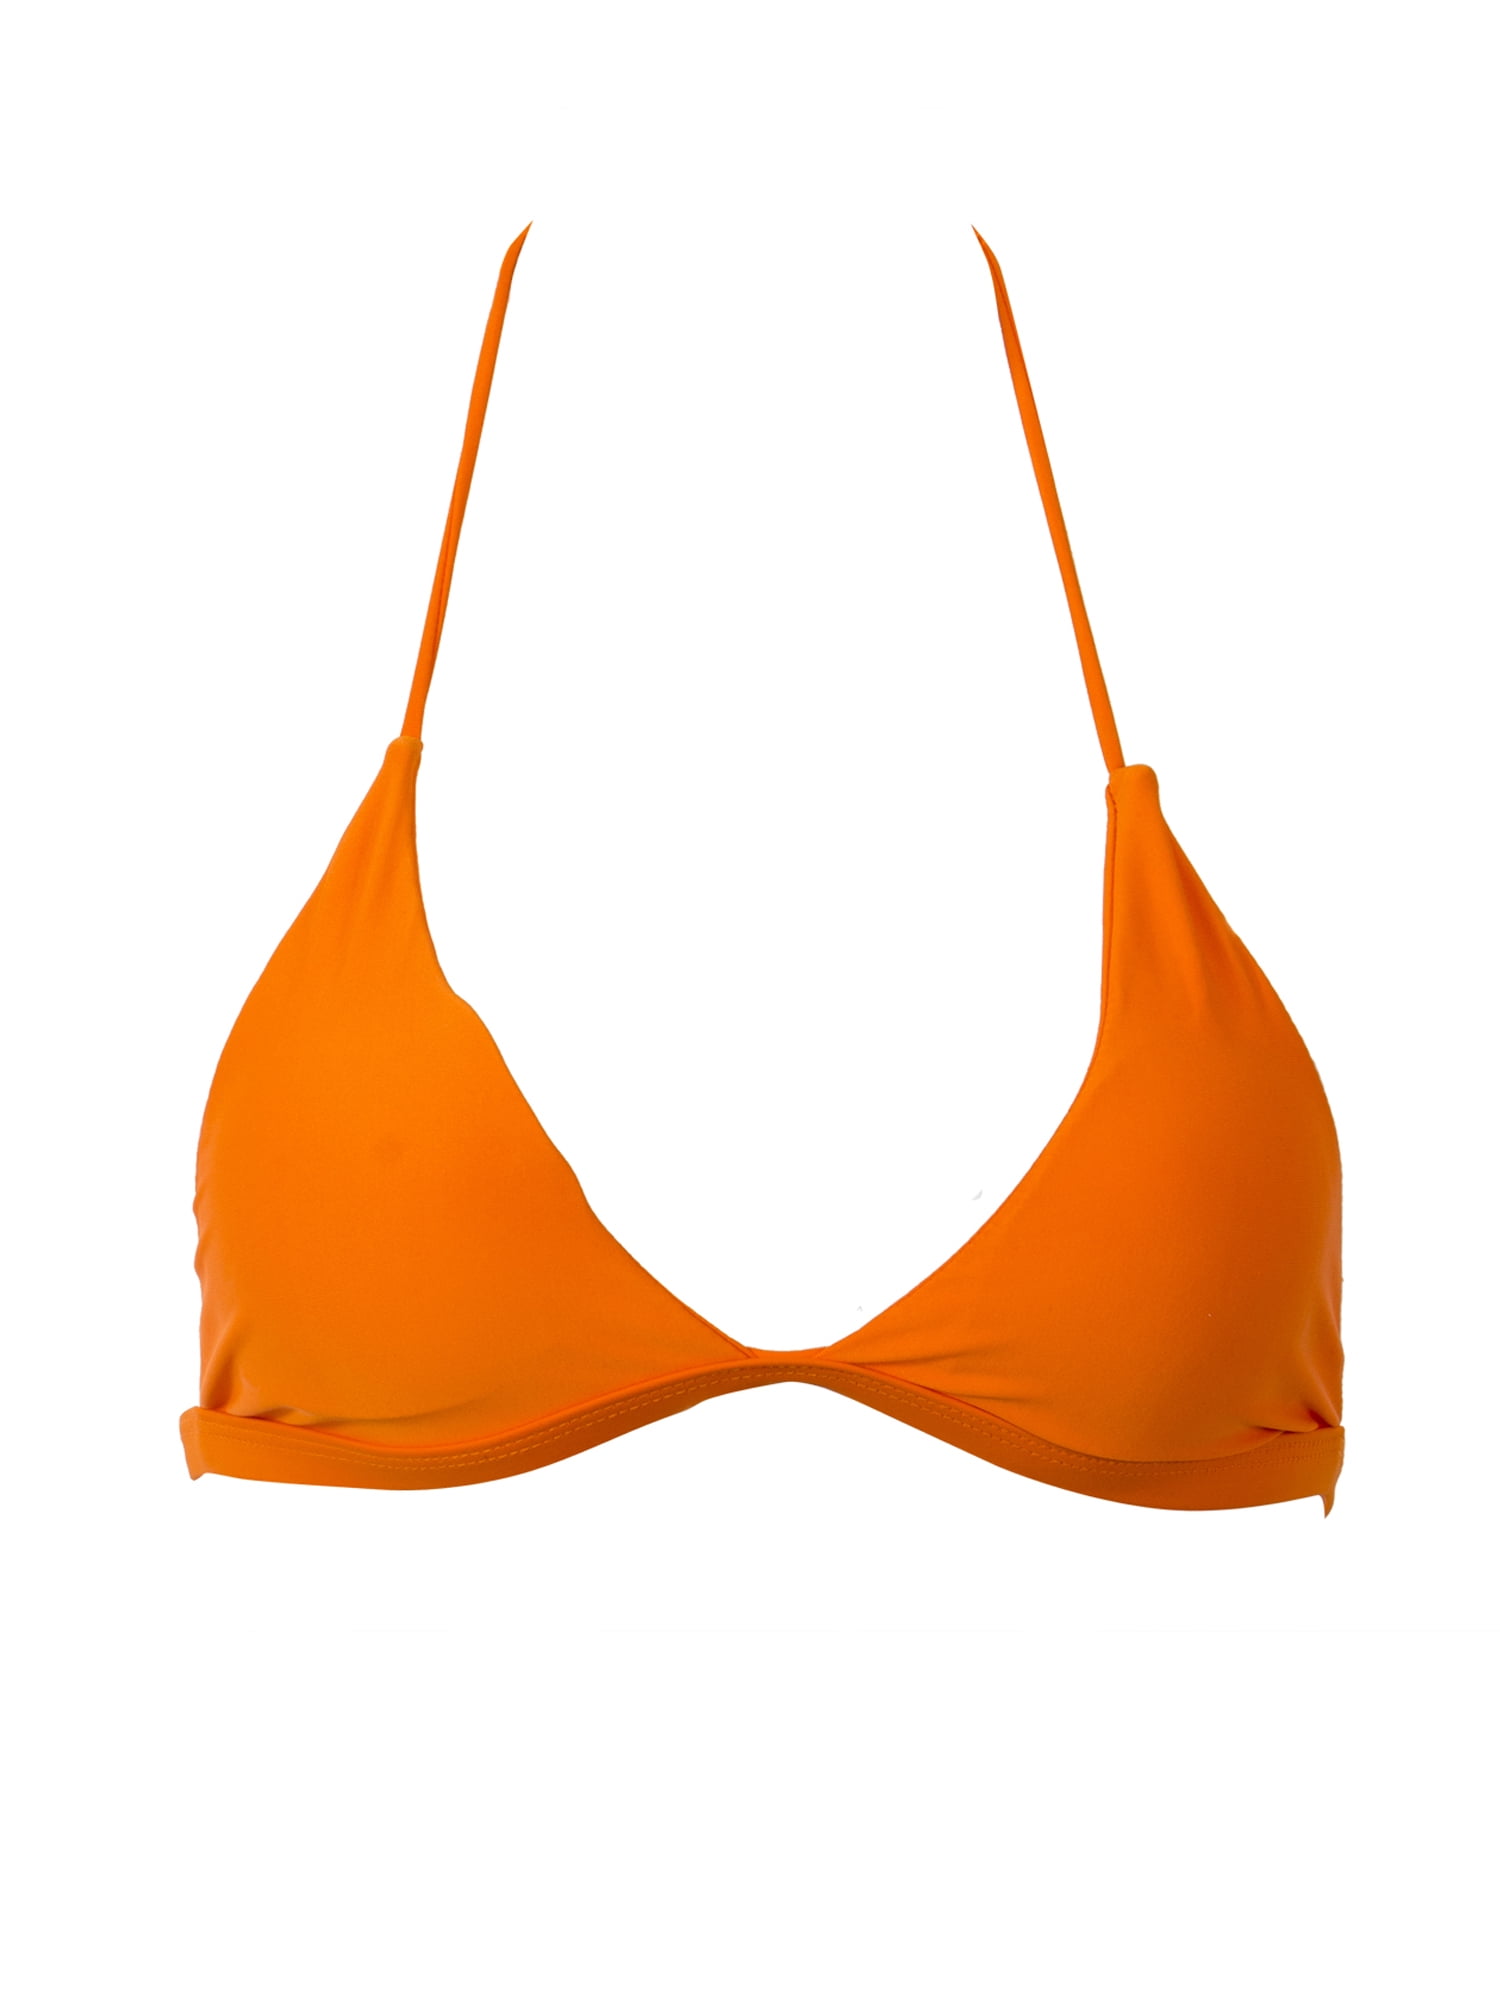 FINELOOK - FINELOOK Summer Women Bandage Bikini Top Push-up Padded Bra ...